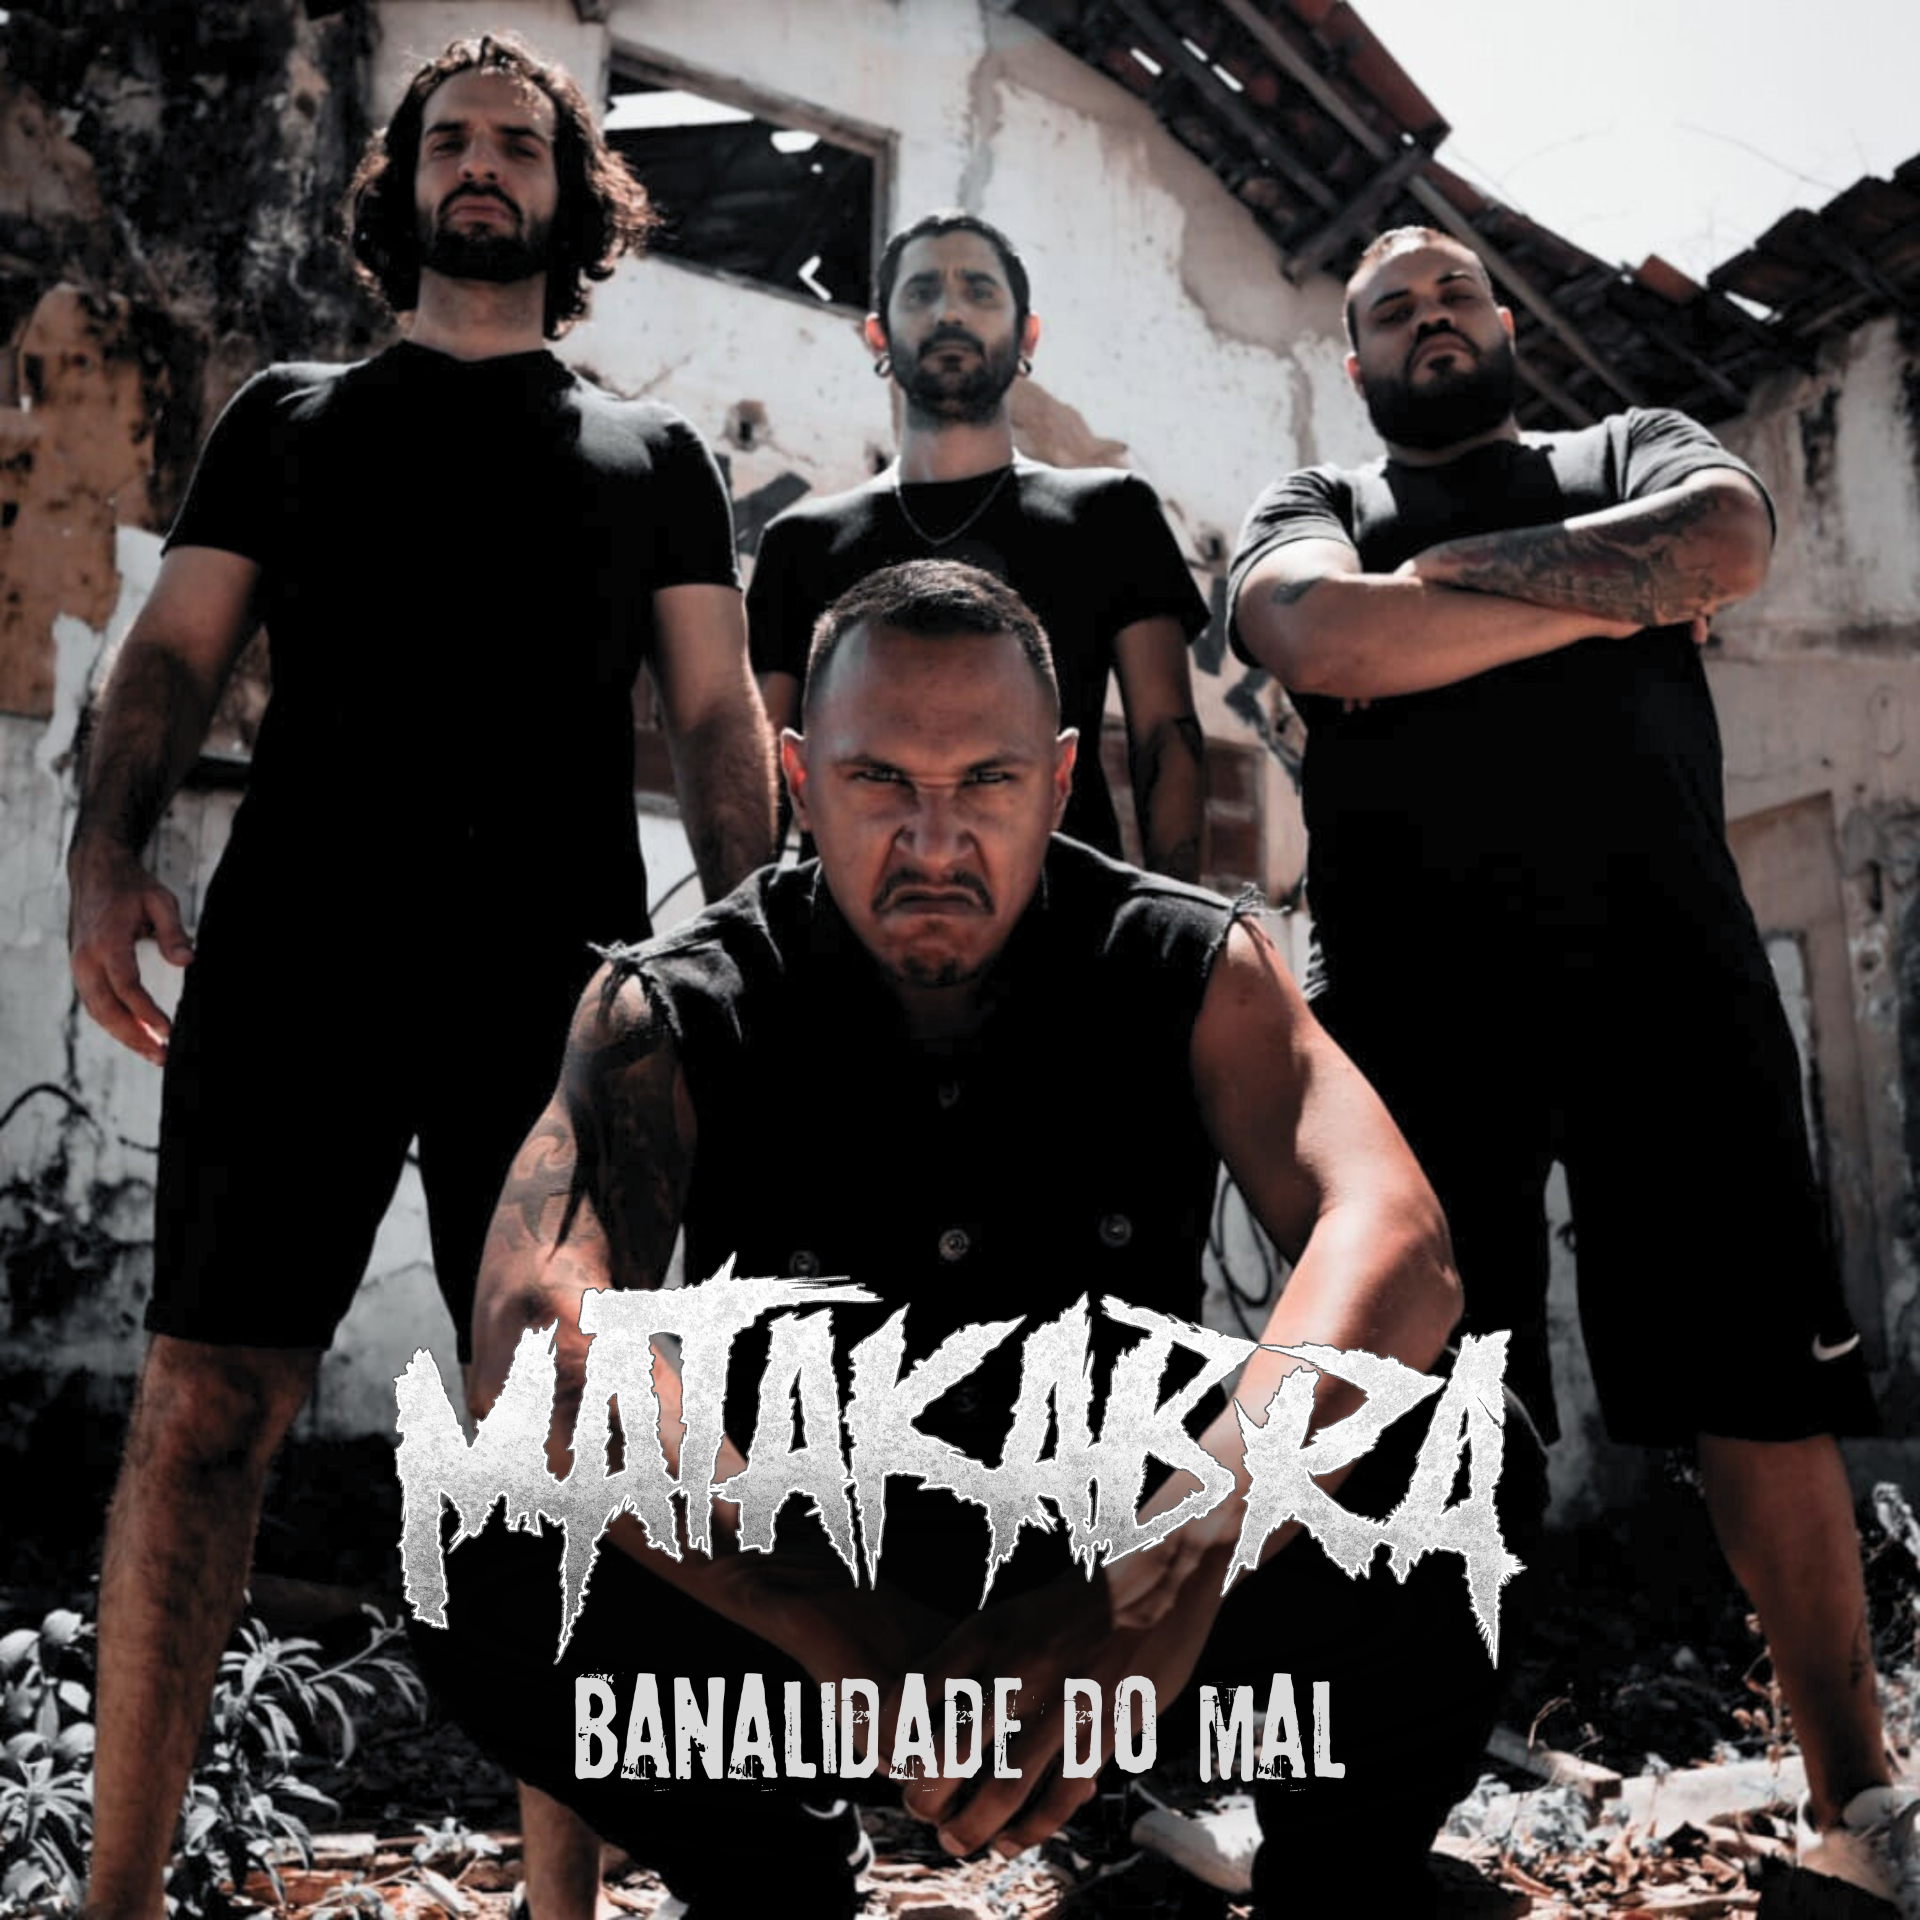 Matakabra lança videoclipe "Banalidade do Mal" discutindo racismo e violência e anuncia show com Black Pantera e Eskröta